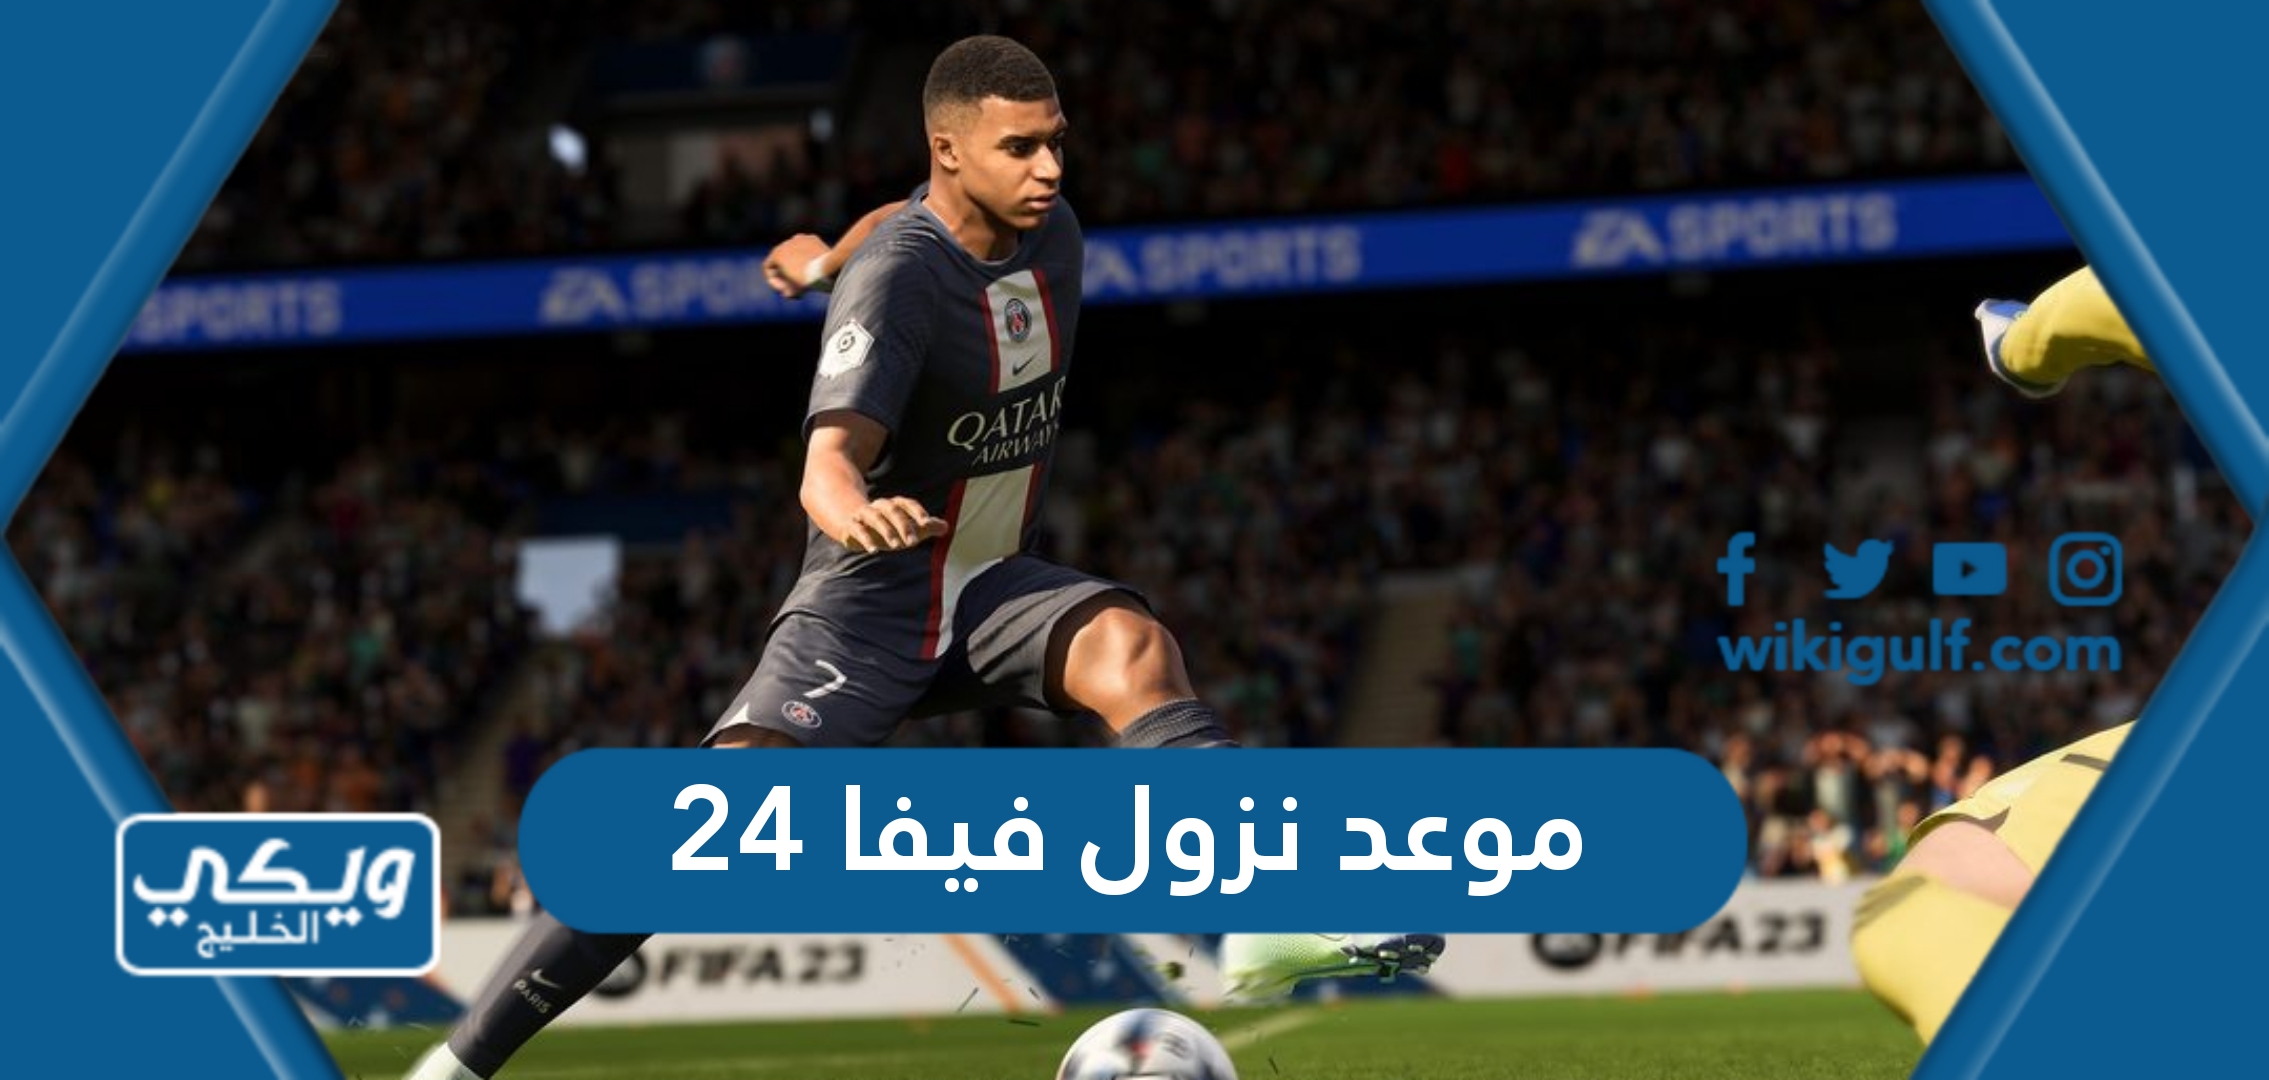 موعد نزول فيفا 24 “FIFA 24 release date”